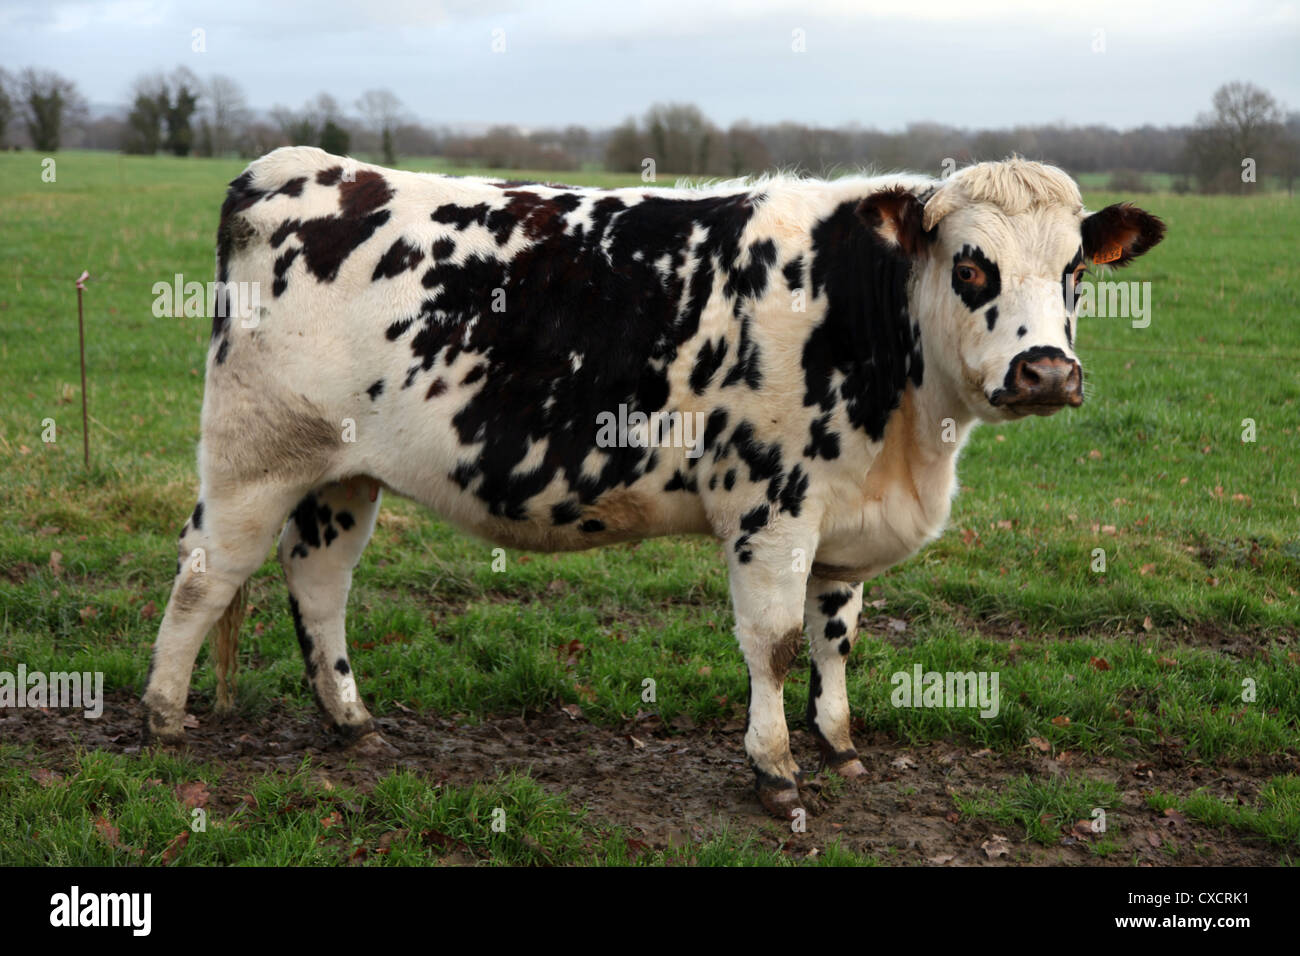 C'est une photo d'une vache normande dans un champ d'herbe en Normandie, à l'ouest de la France. C'est dans une ferme et l'animal nous regarde. Banque D'Images